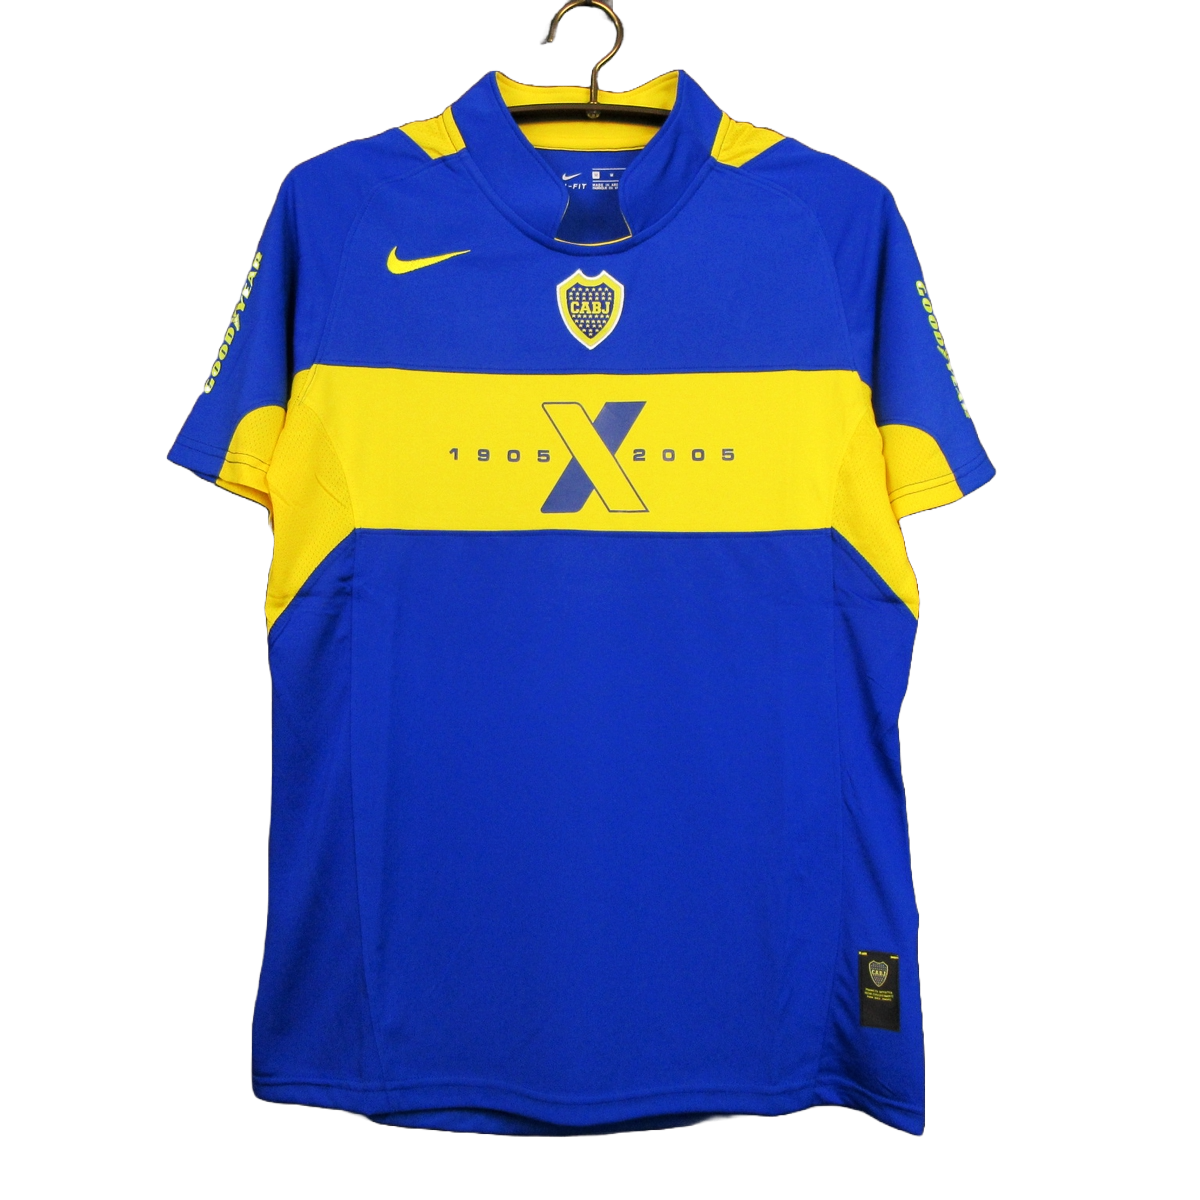 Boca Juniors - 05/06 Vintage